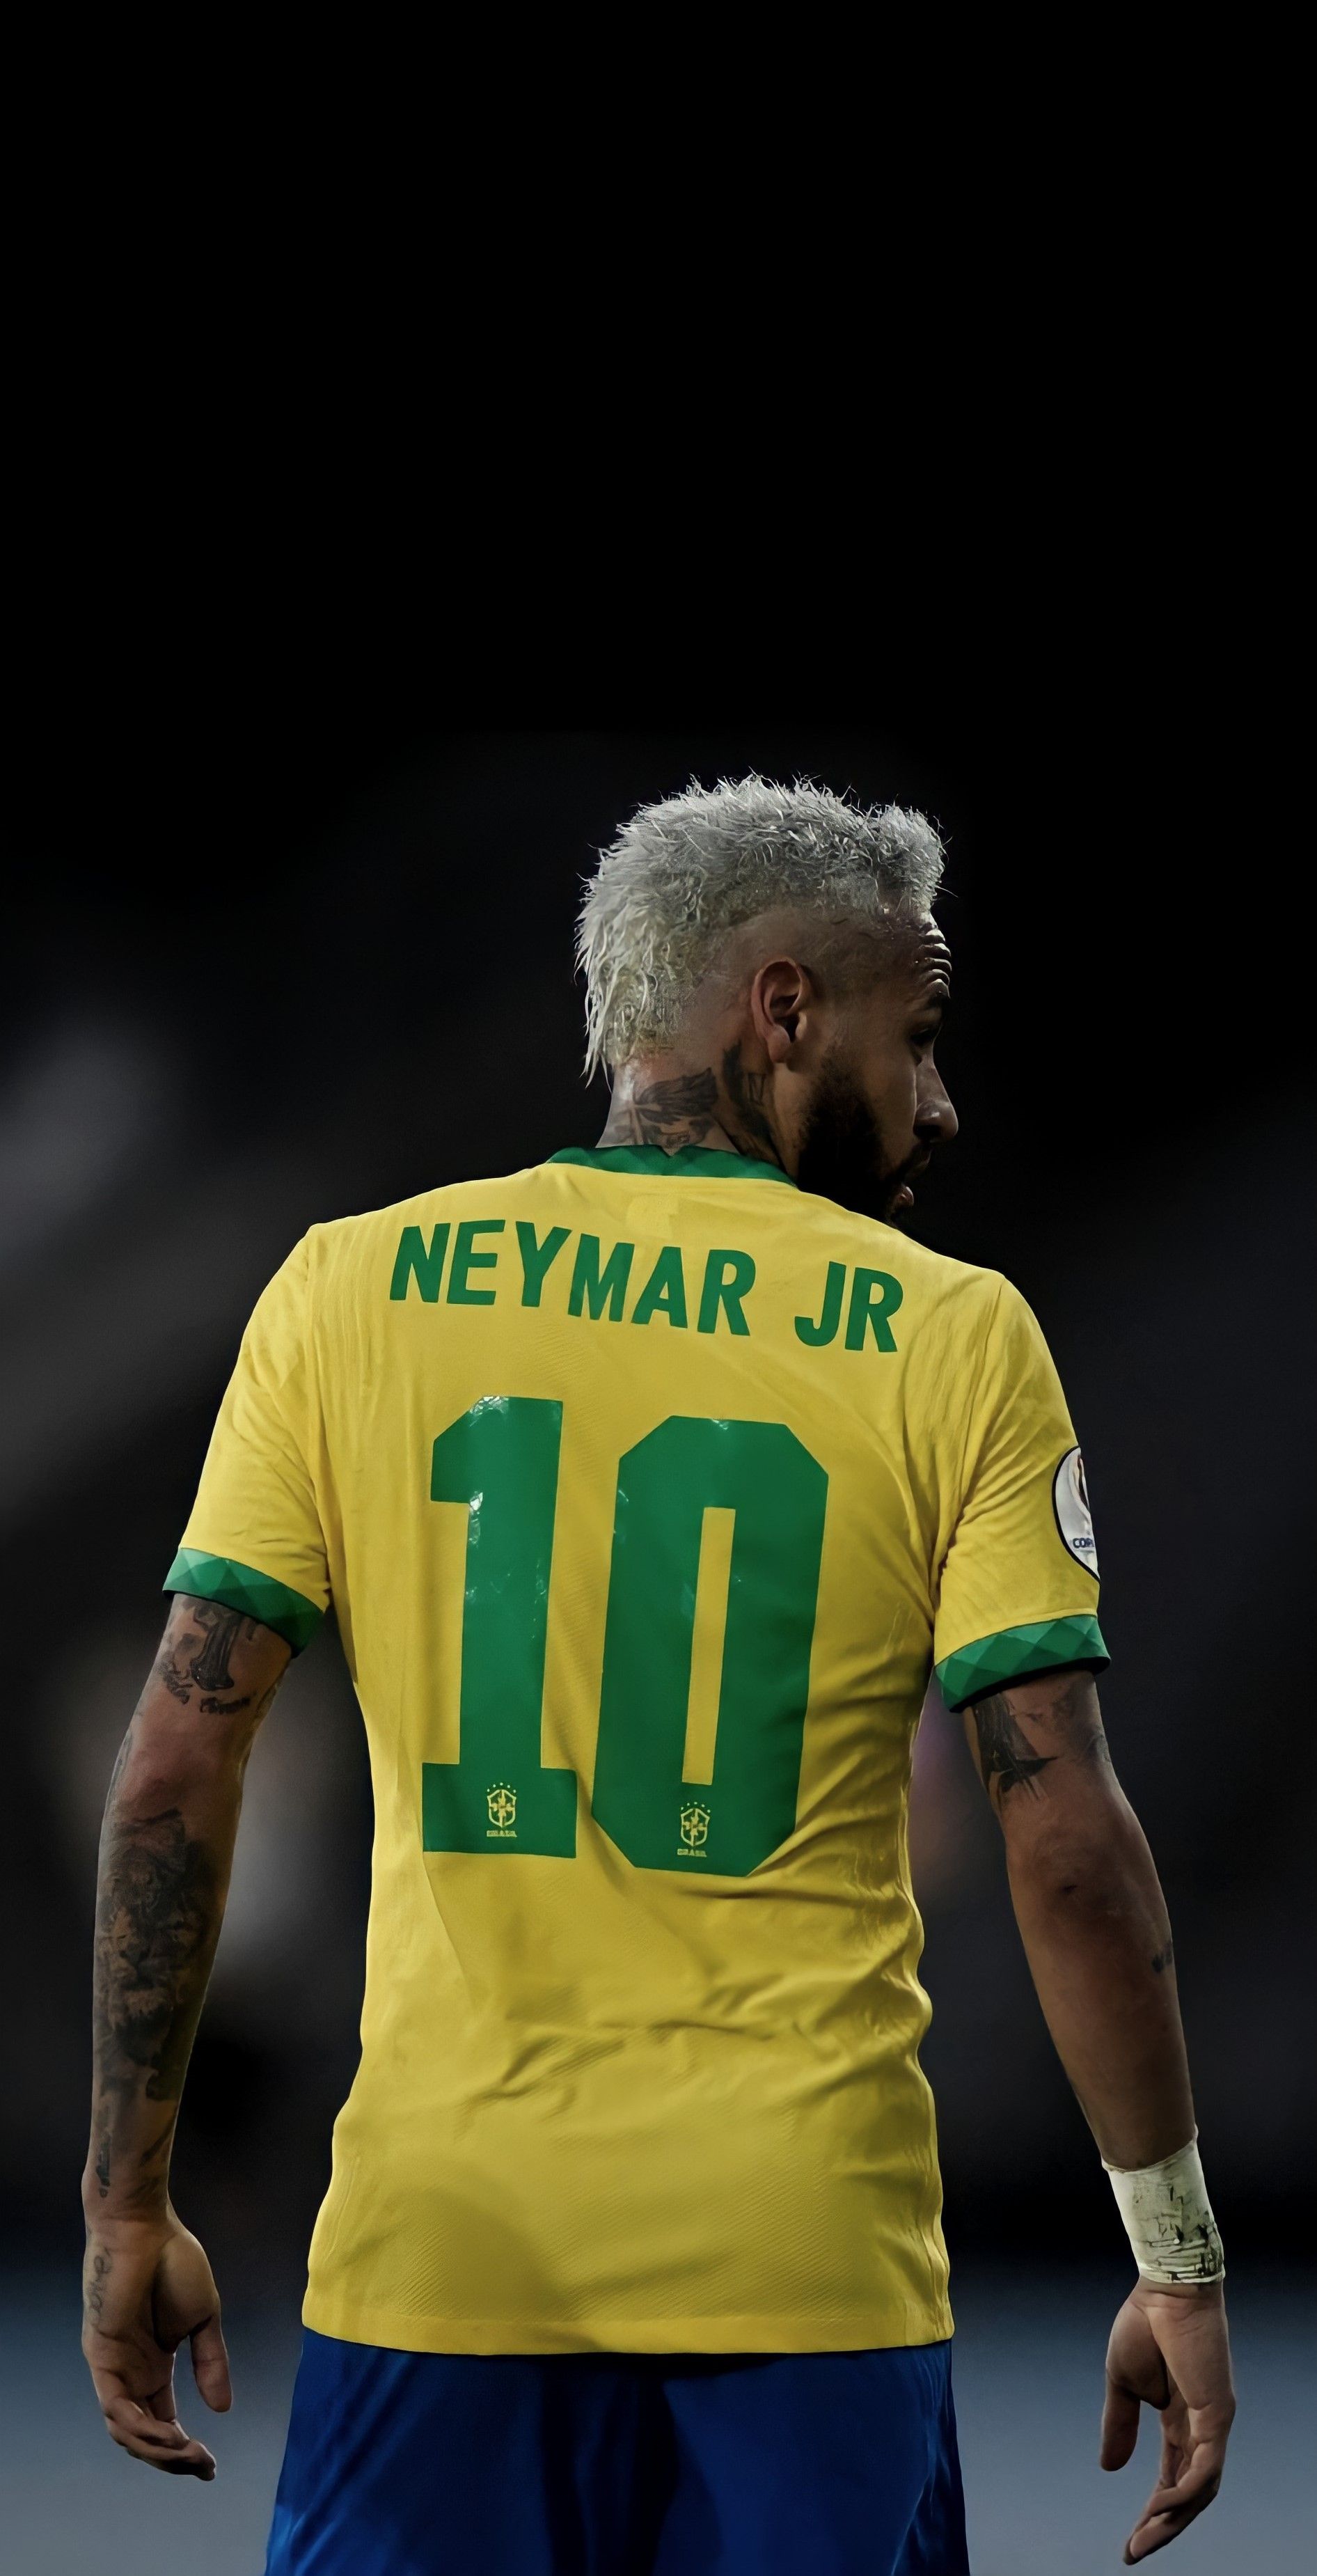 Ney ideas. neymar jr, neymar, neymar football